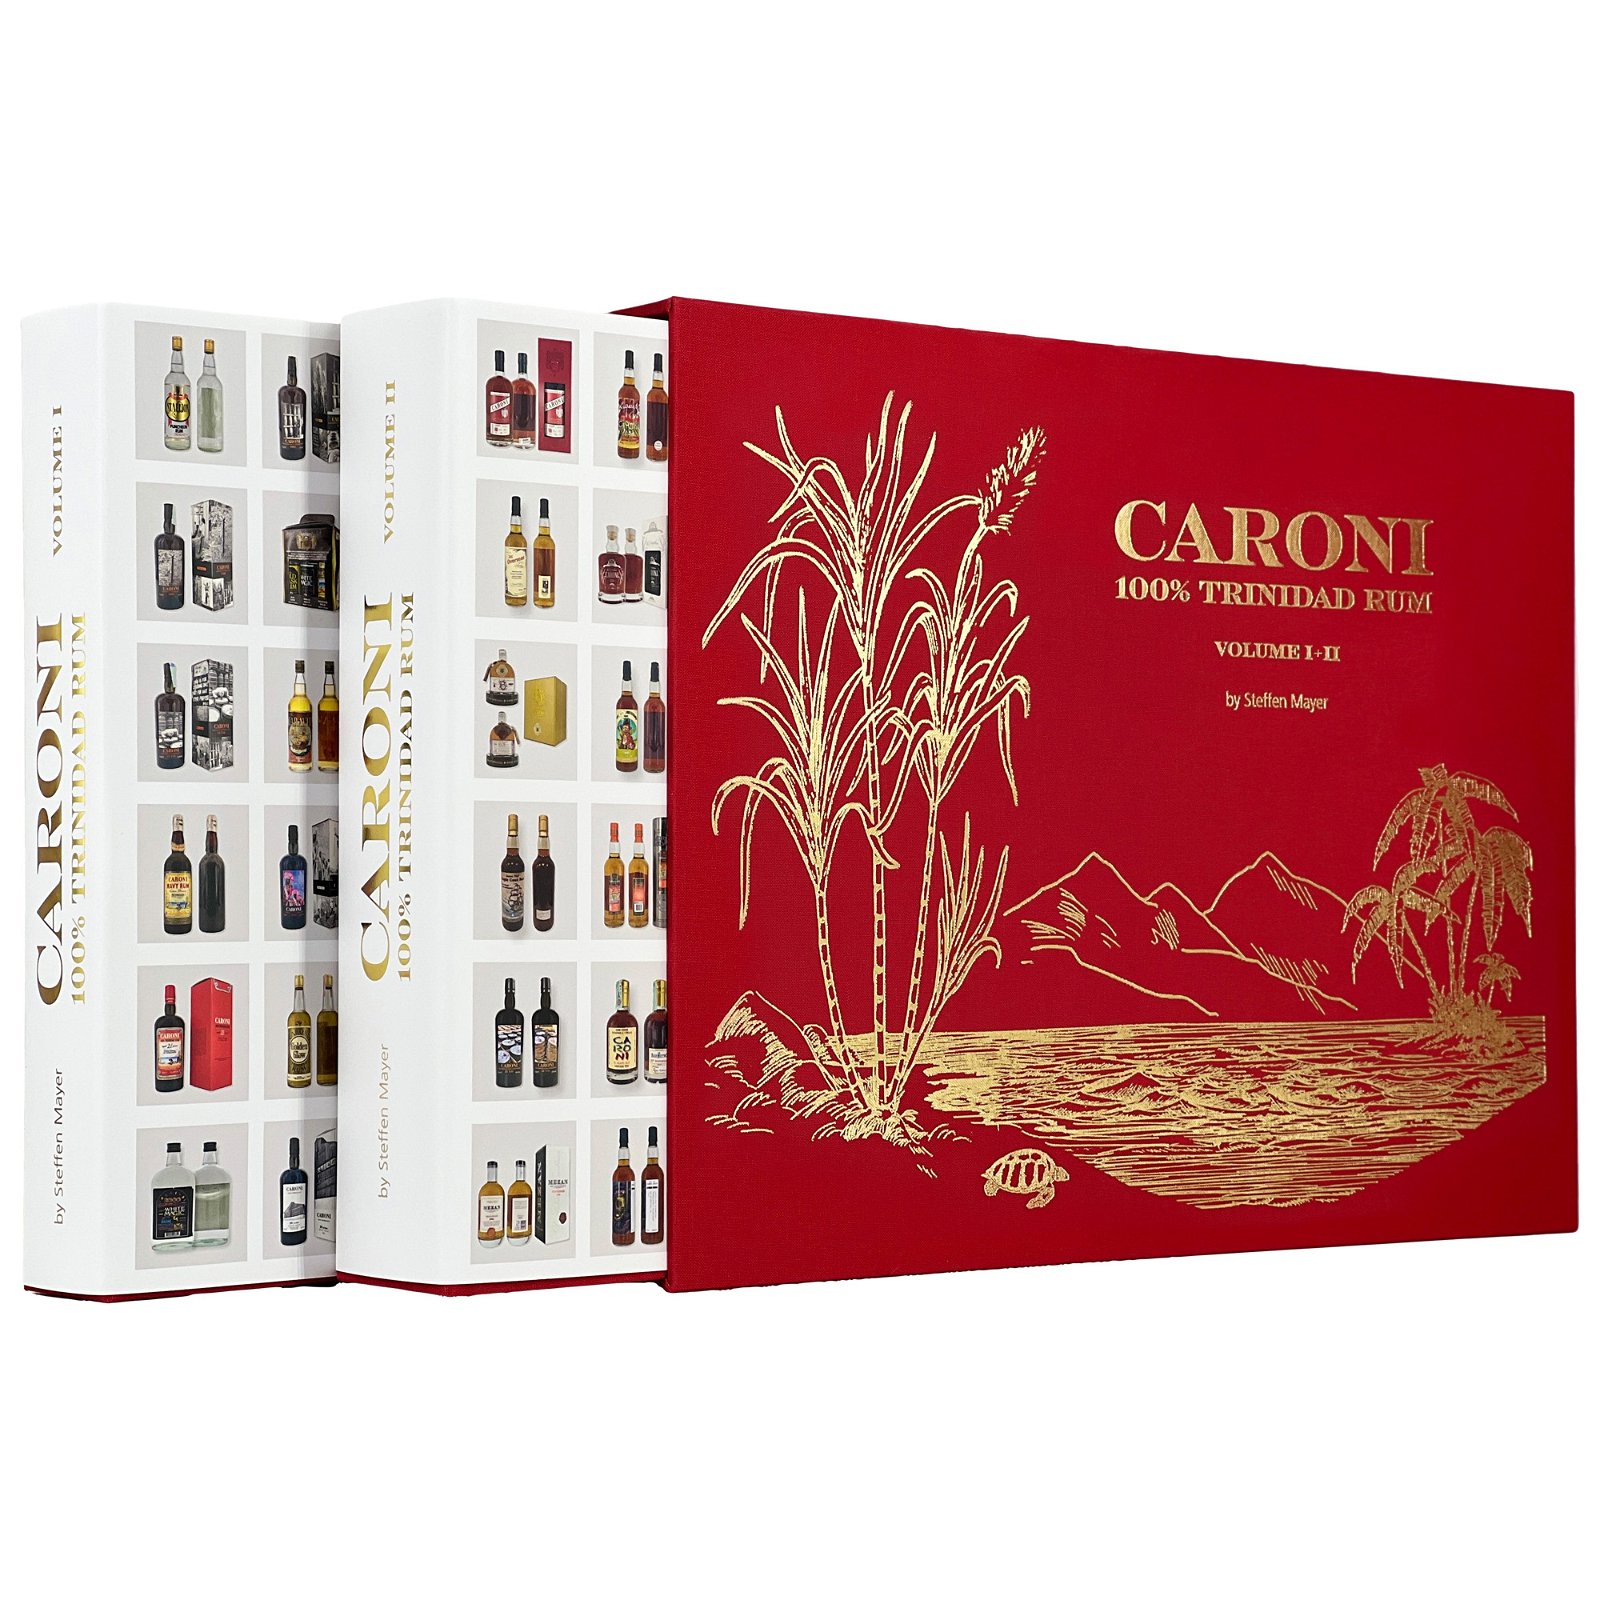 Caroni 100% Trinidad Rum Volume I-II by Steffen Mayer (2 Bände im Schuber)